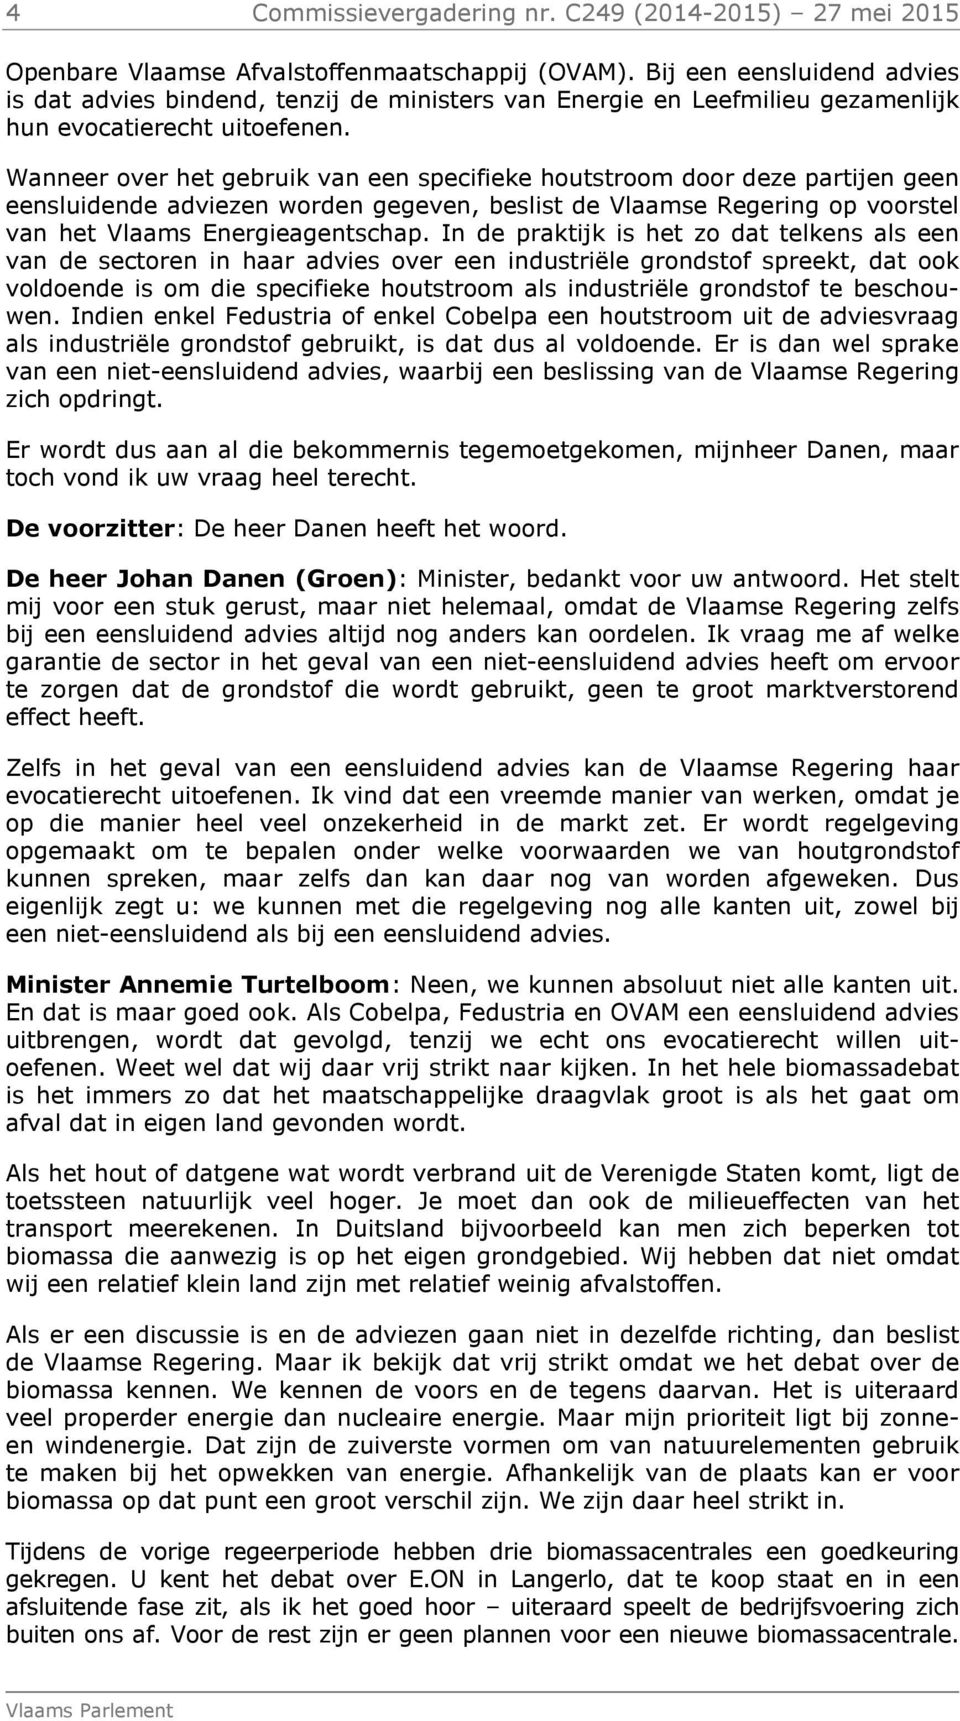 Wanneer over het gebruik van een specifieke houtstroom door deze partijen geen eensluidende adviezen worden gegeven, beslist de Vlaamse Regering op voorstel van het Vlaams Energieagentschap.